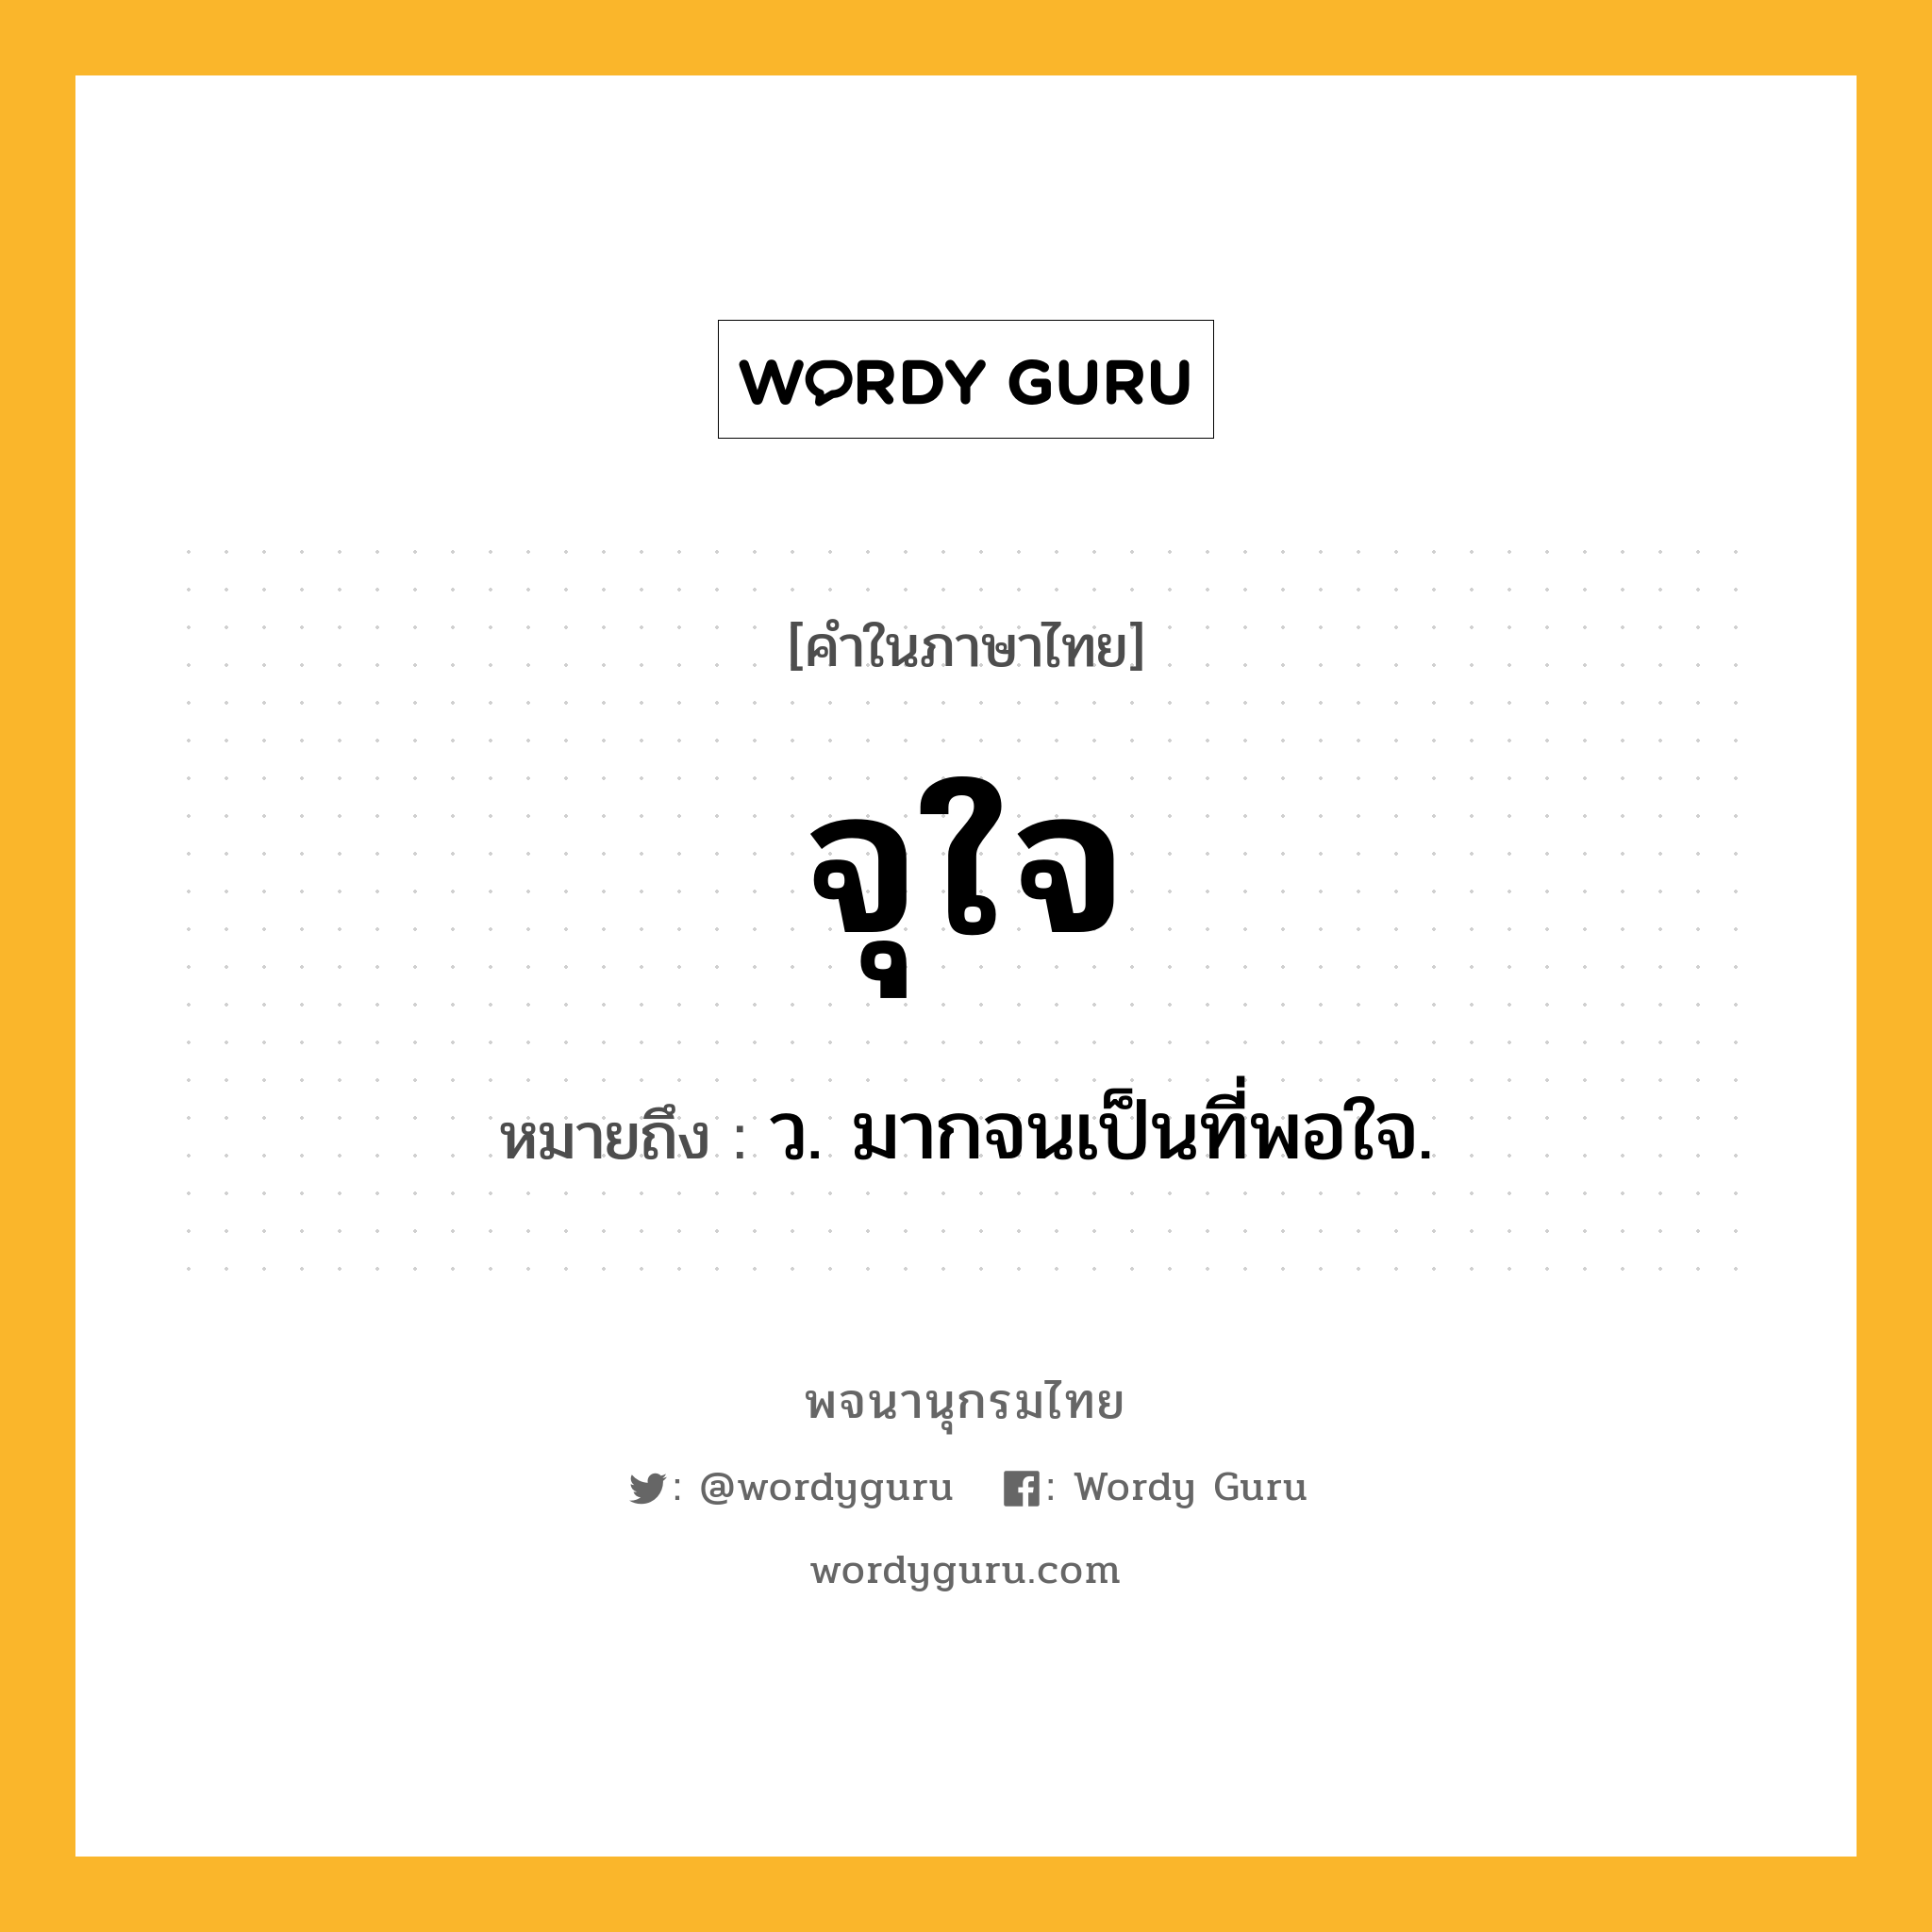 จุใจ หมายถึงอะไร?, คำในภาษาไทย จุใจ หมายถึง ว. มากจนเป็นที่พอใจ.